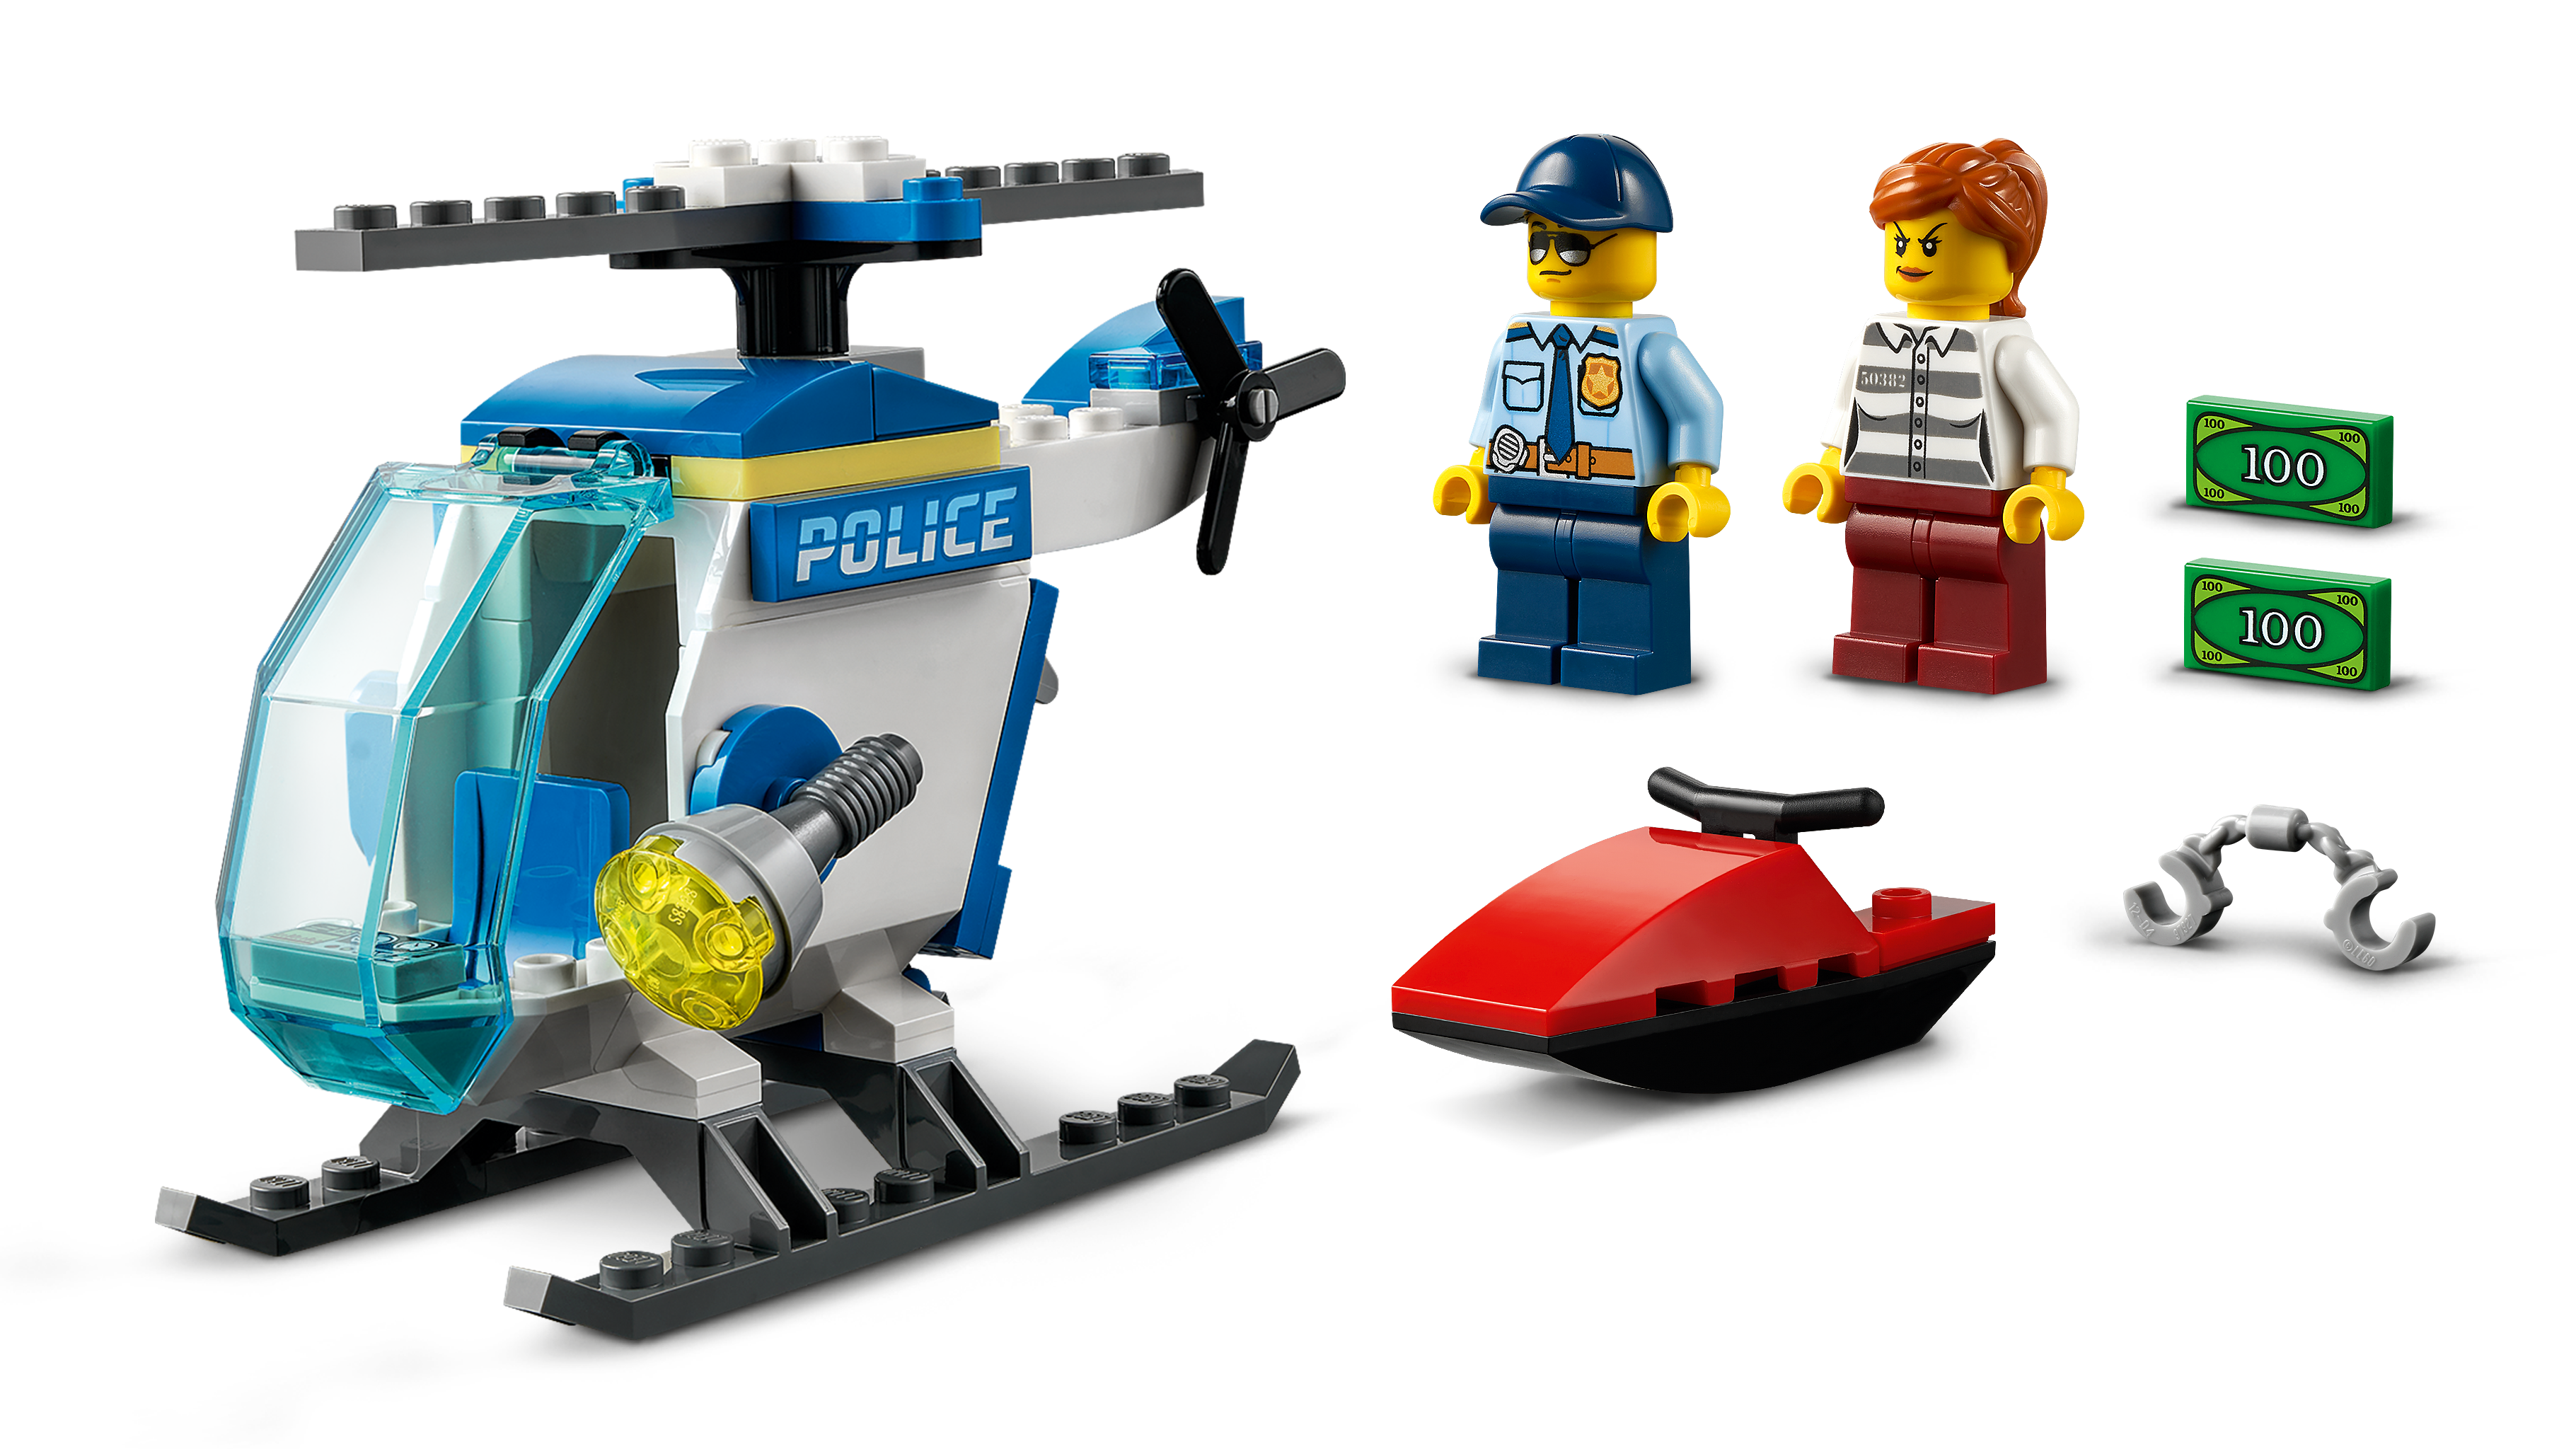 Lego hélicoptere de police - LEGO